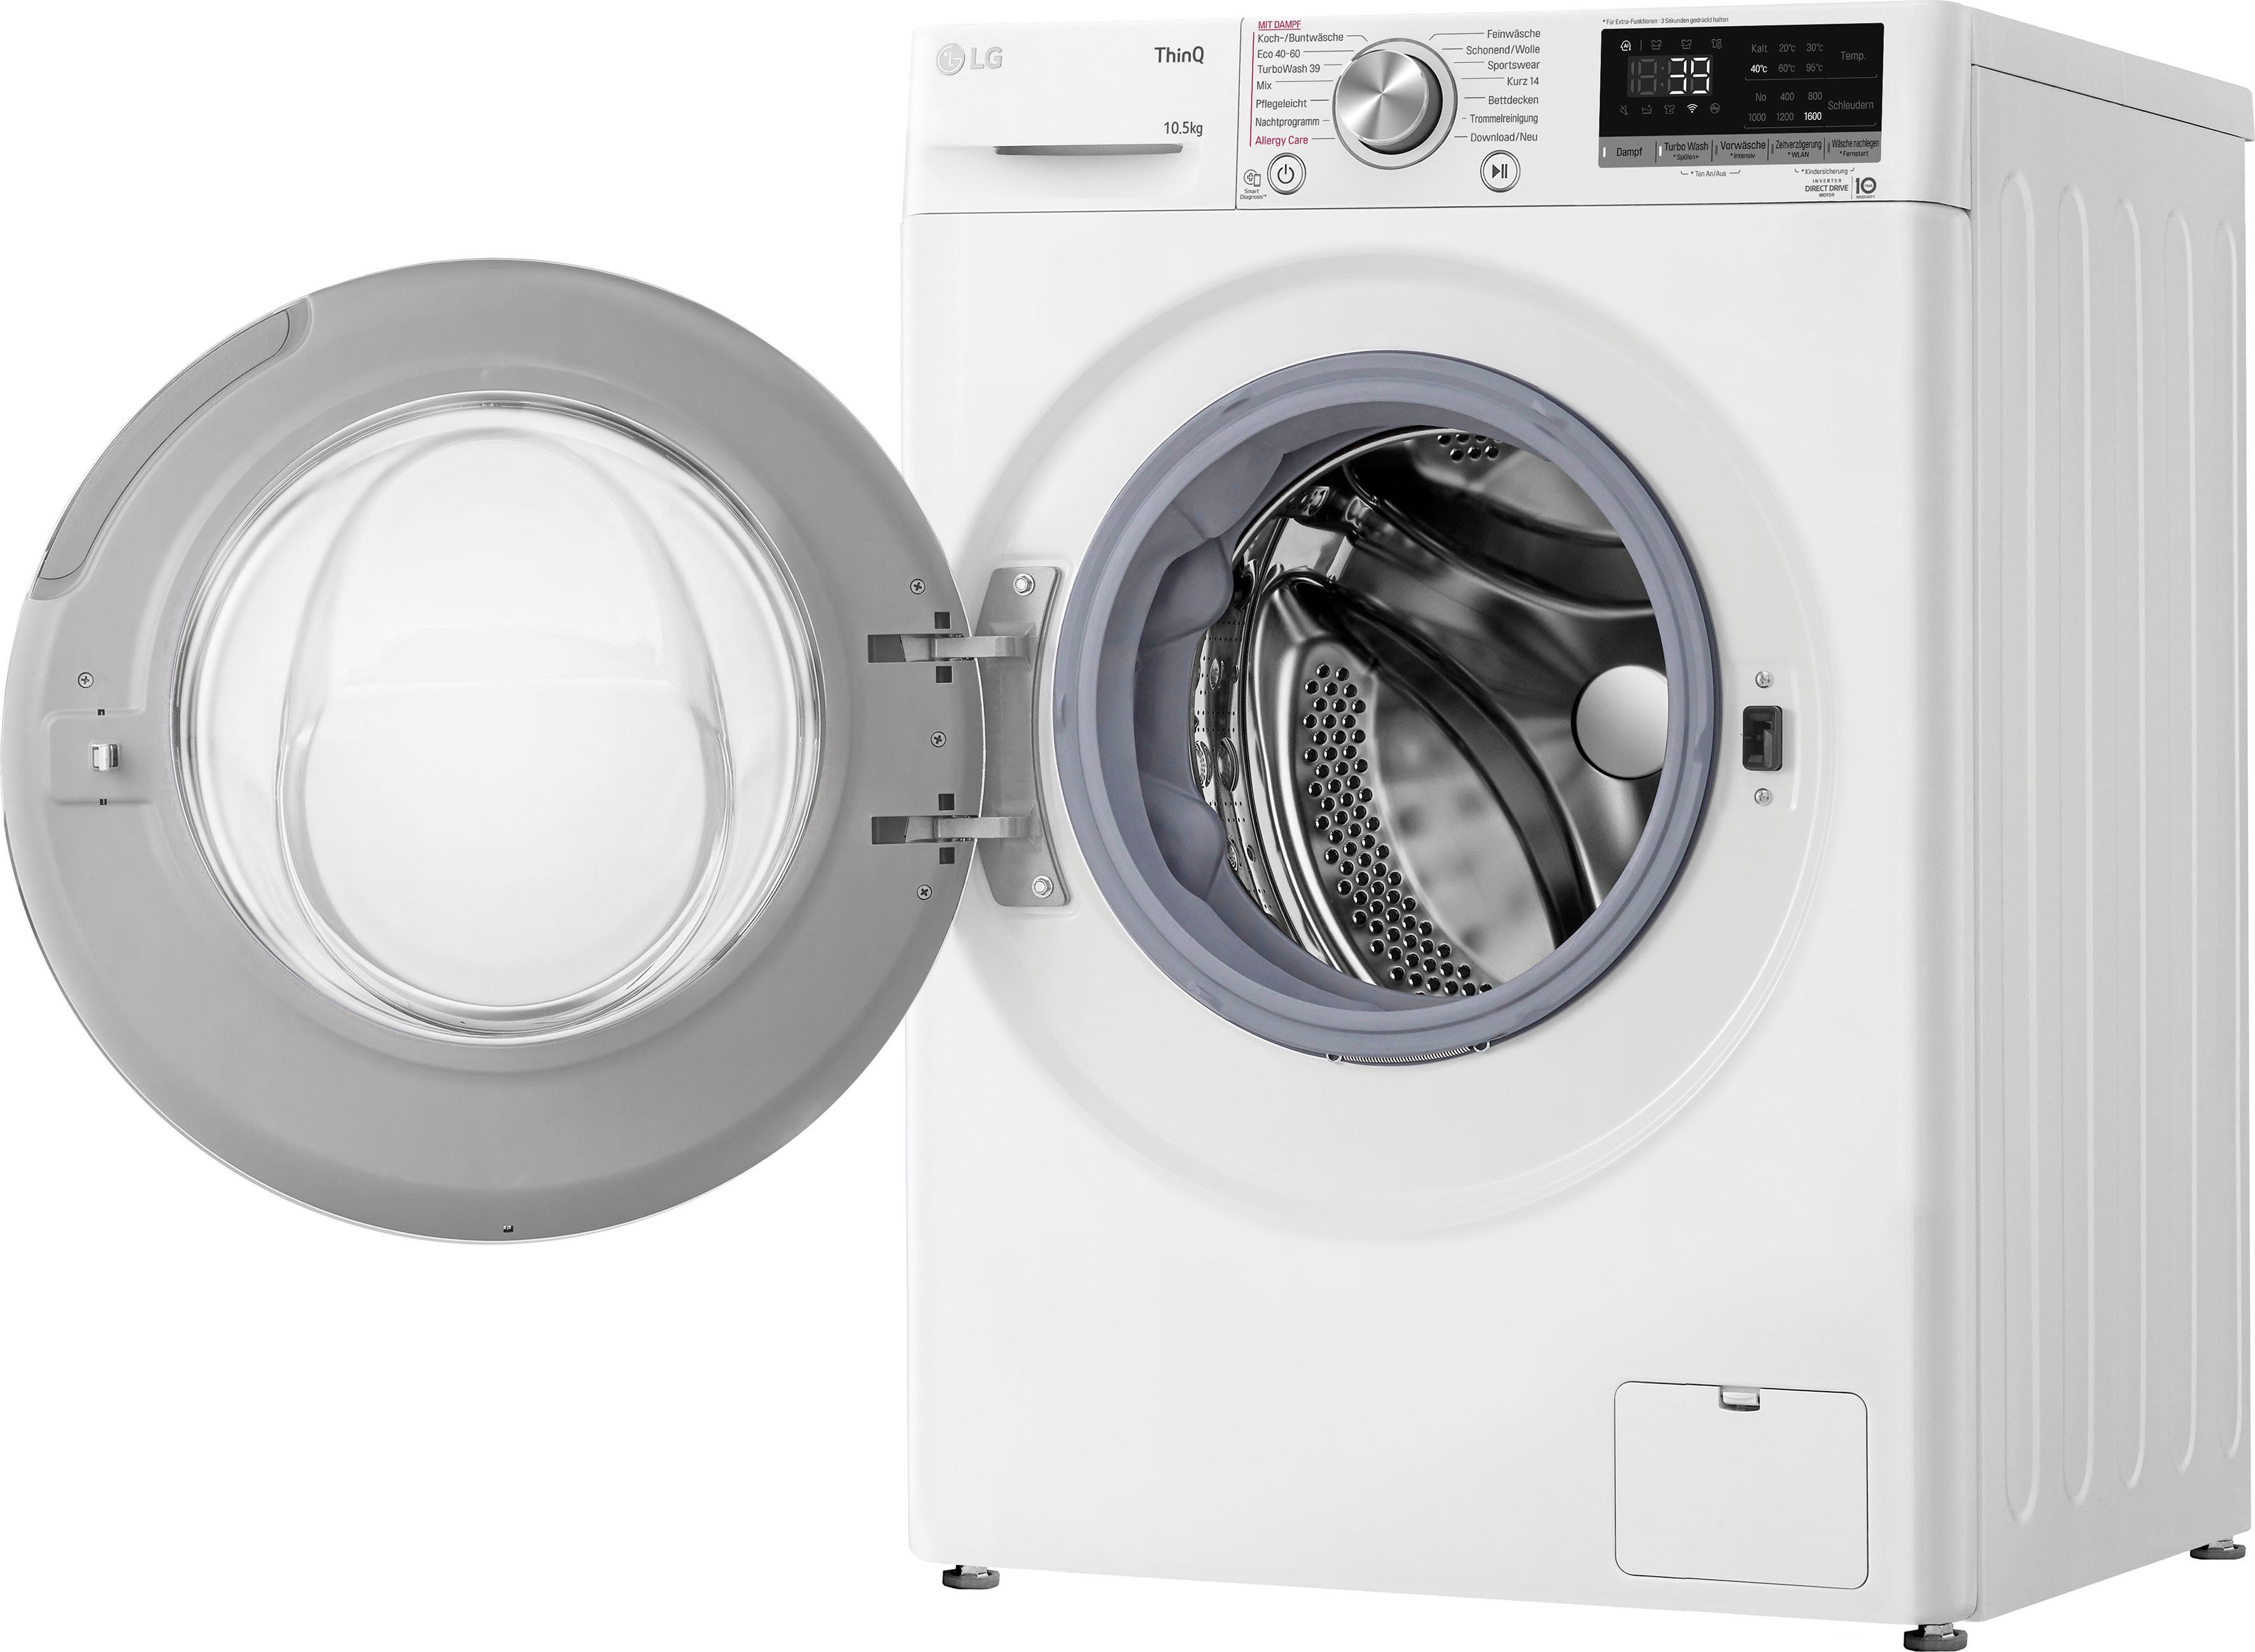 kg, 39 nur 10,5 Waschmaschine - TurboWash® Waschen LG U/min, 1600 F6WV710P1, in Minuten